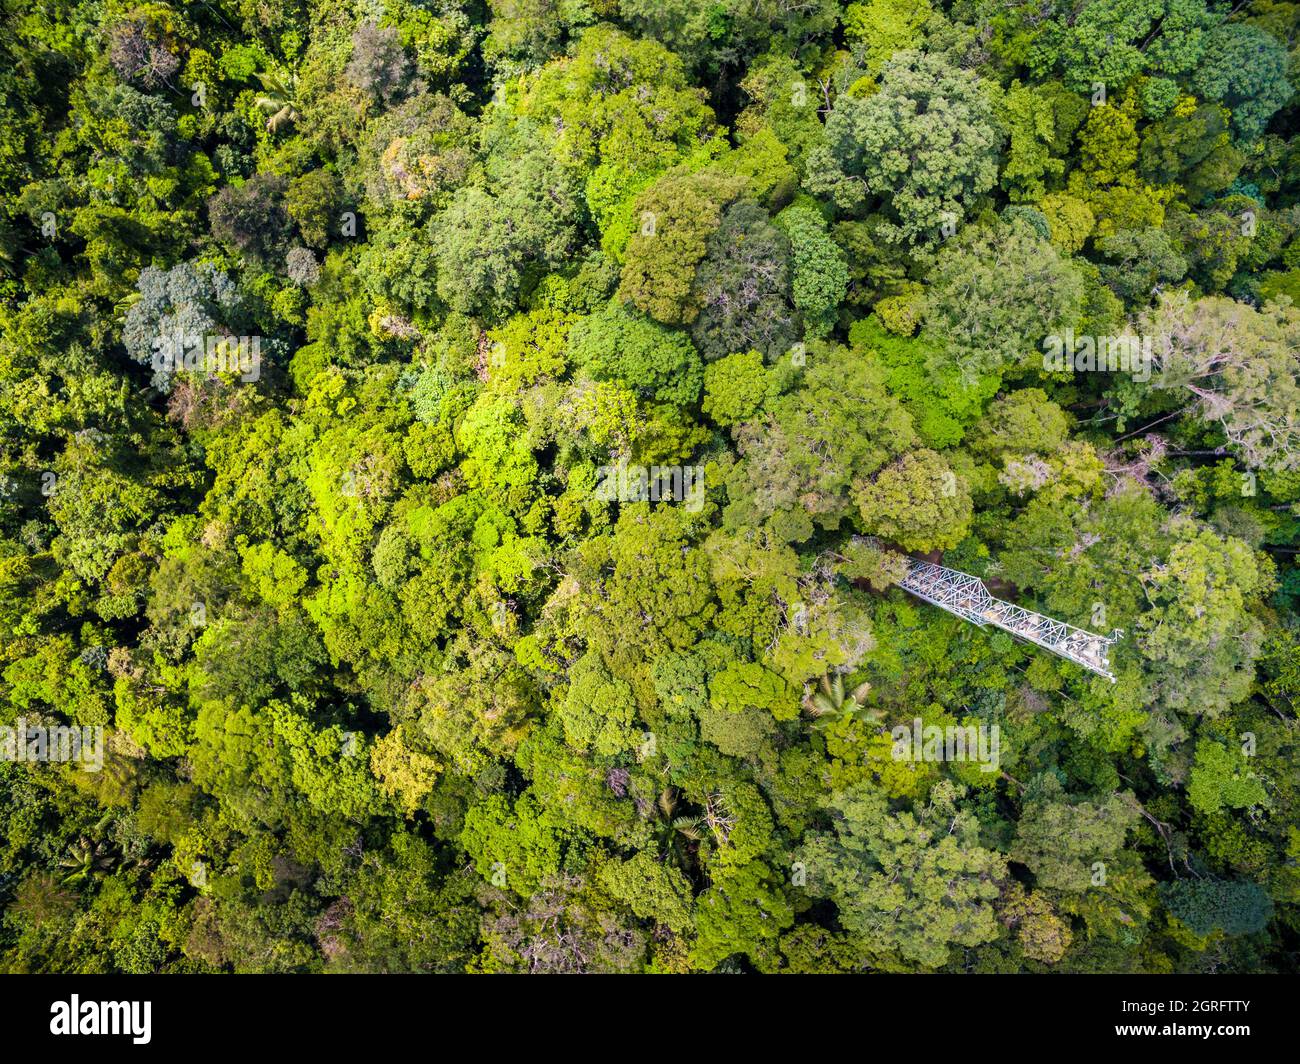 Station de recherche France, Guyane française, Kourou, Paracou (gérée par le Cirad) étudiant les échanges de gaz (cycle du carbone) entre les différentes couches de la forêt tropicale, vue aérienne de la tour Guyaflux (vue aérienne) Banque D'Images